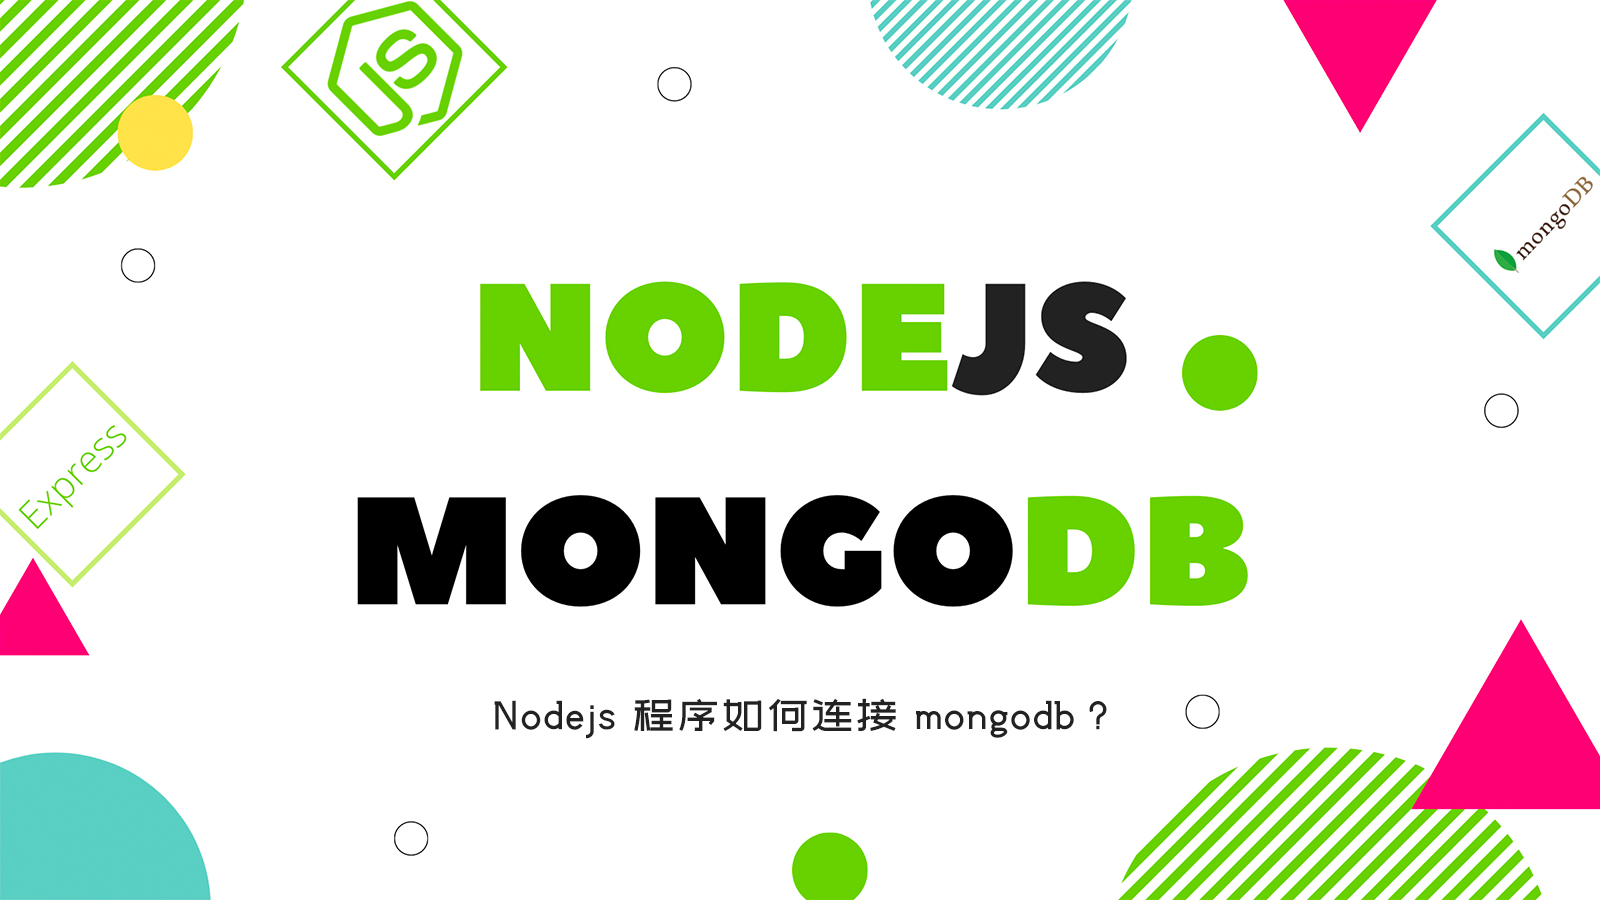 Nodejs 程序如何连接 mongodb？